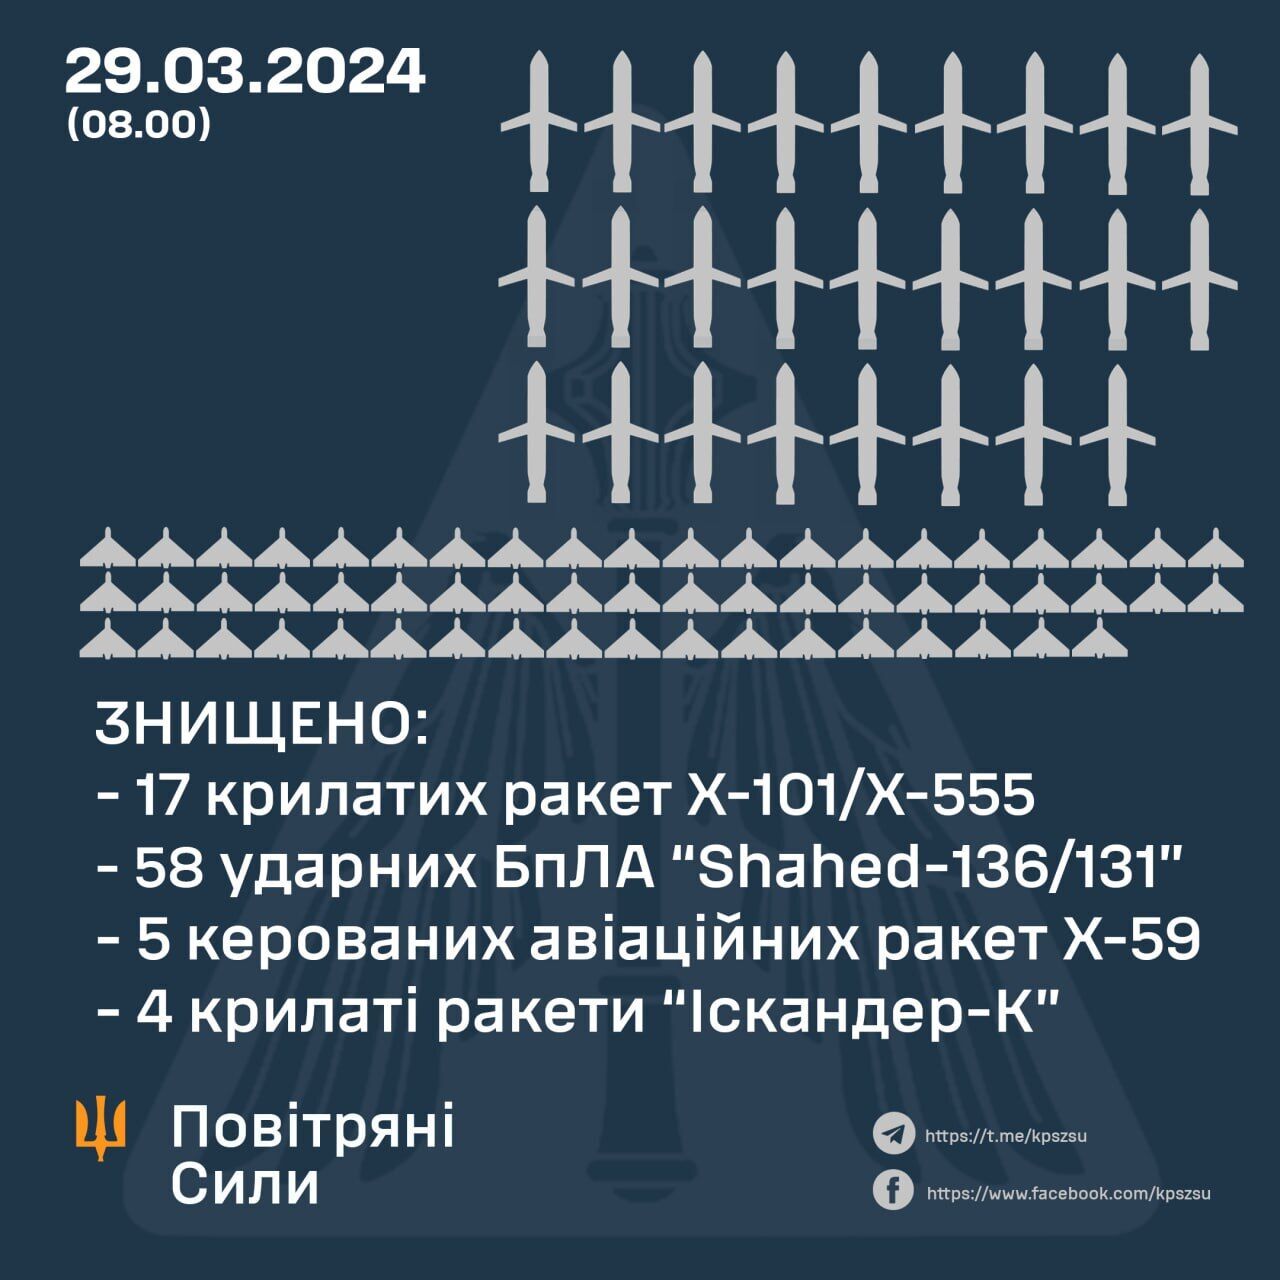 Ракеты Х-101/555 преодолели наибольшую дистанцию: чем и откуда оккупанты били по Украине 29 марта